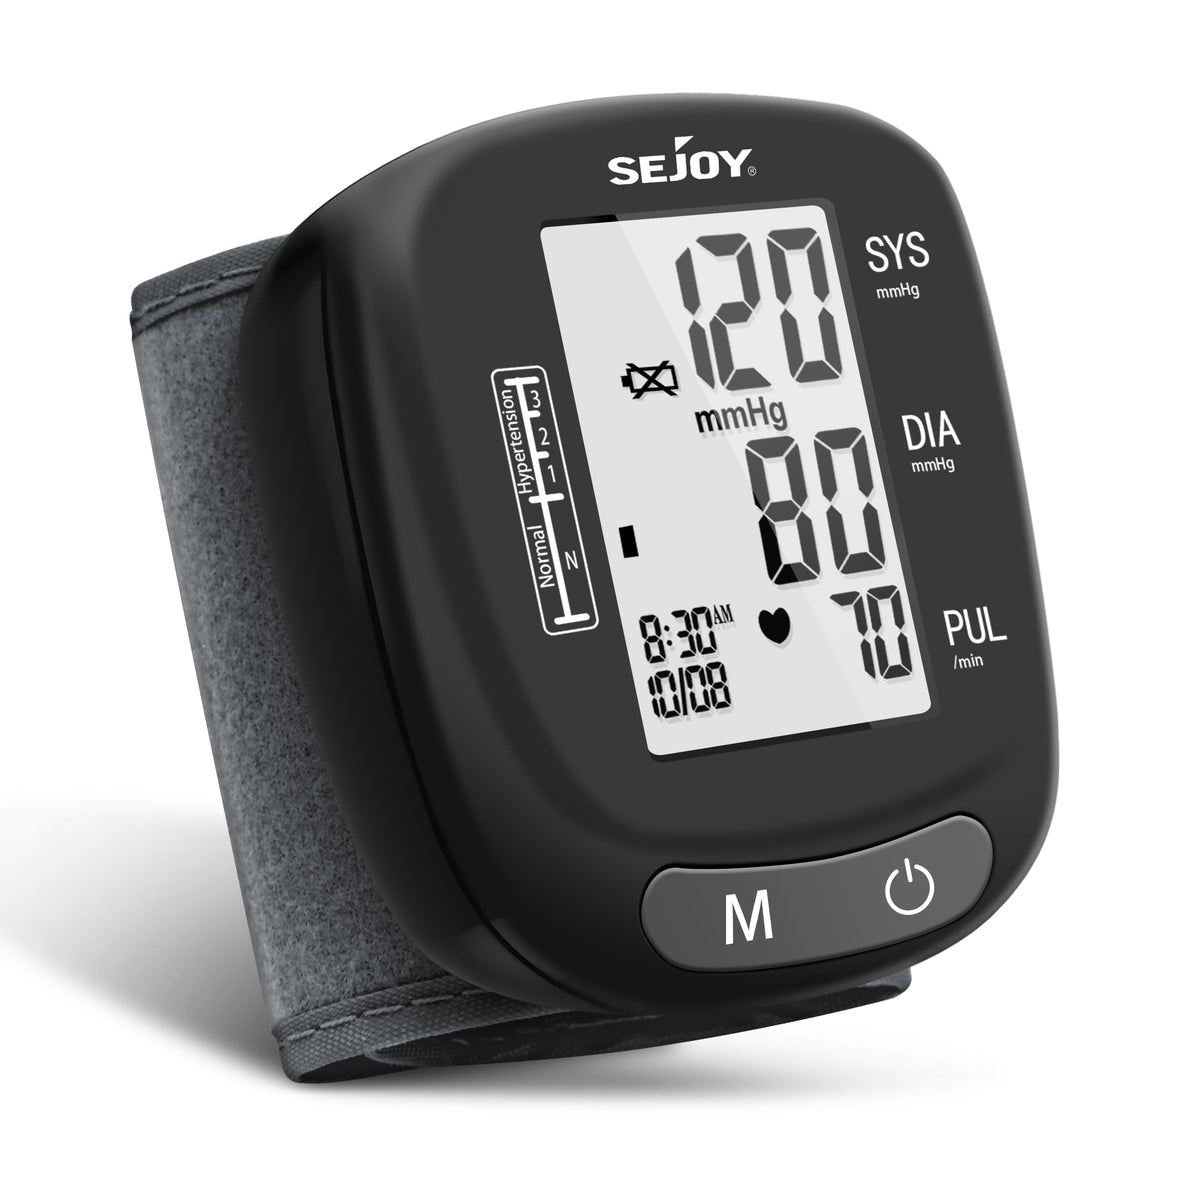 Vive Precision Blood Pressure Monitor with Original Box